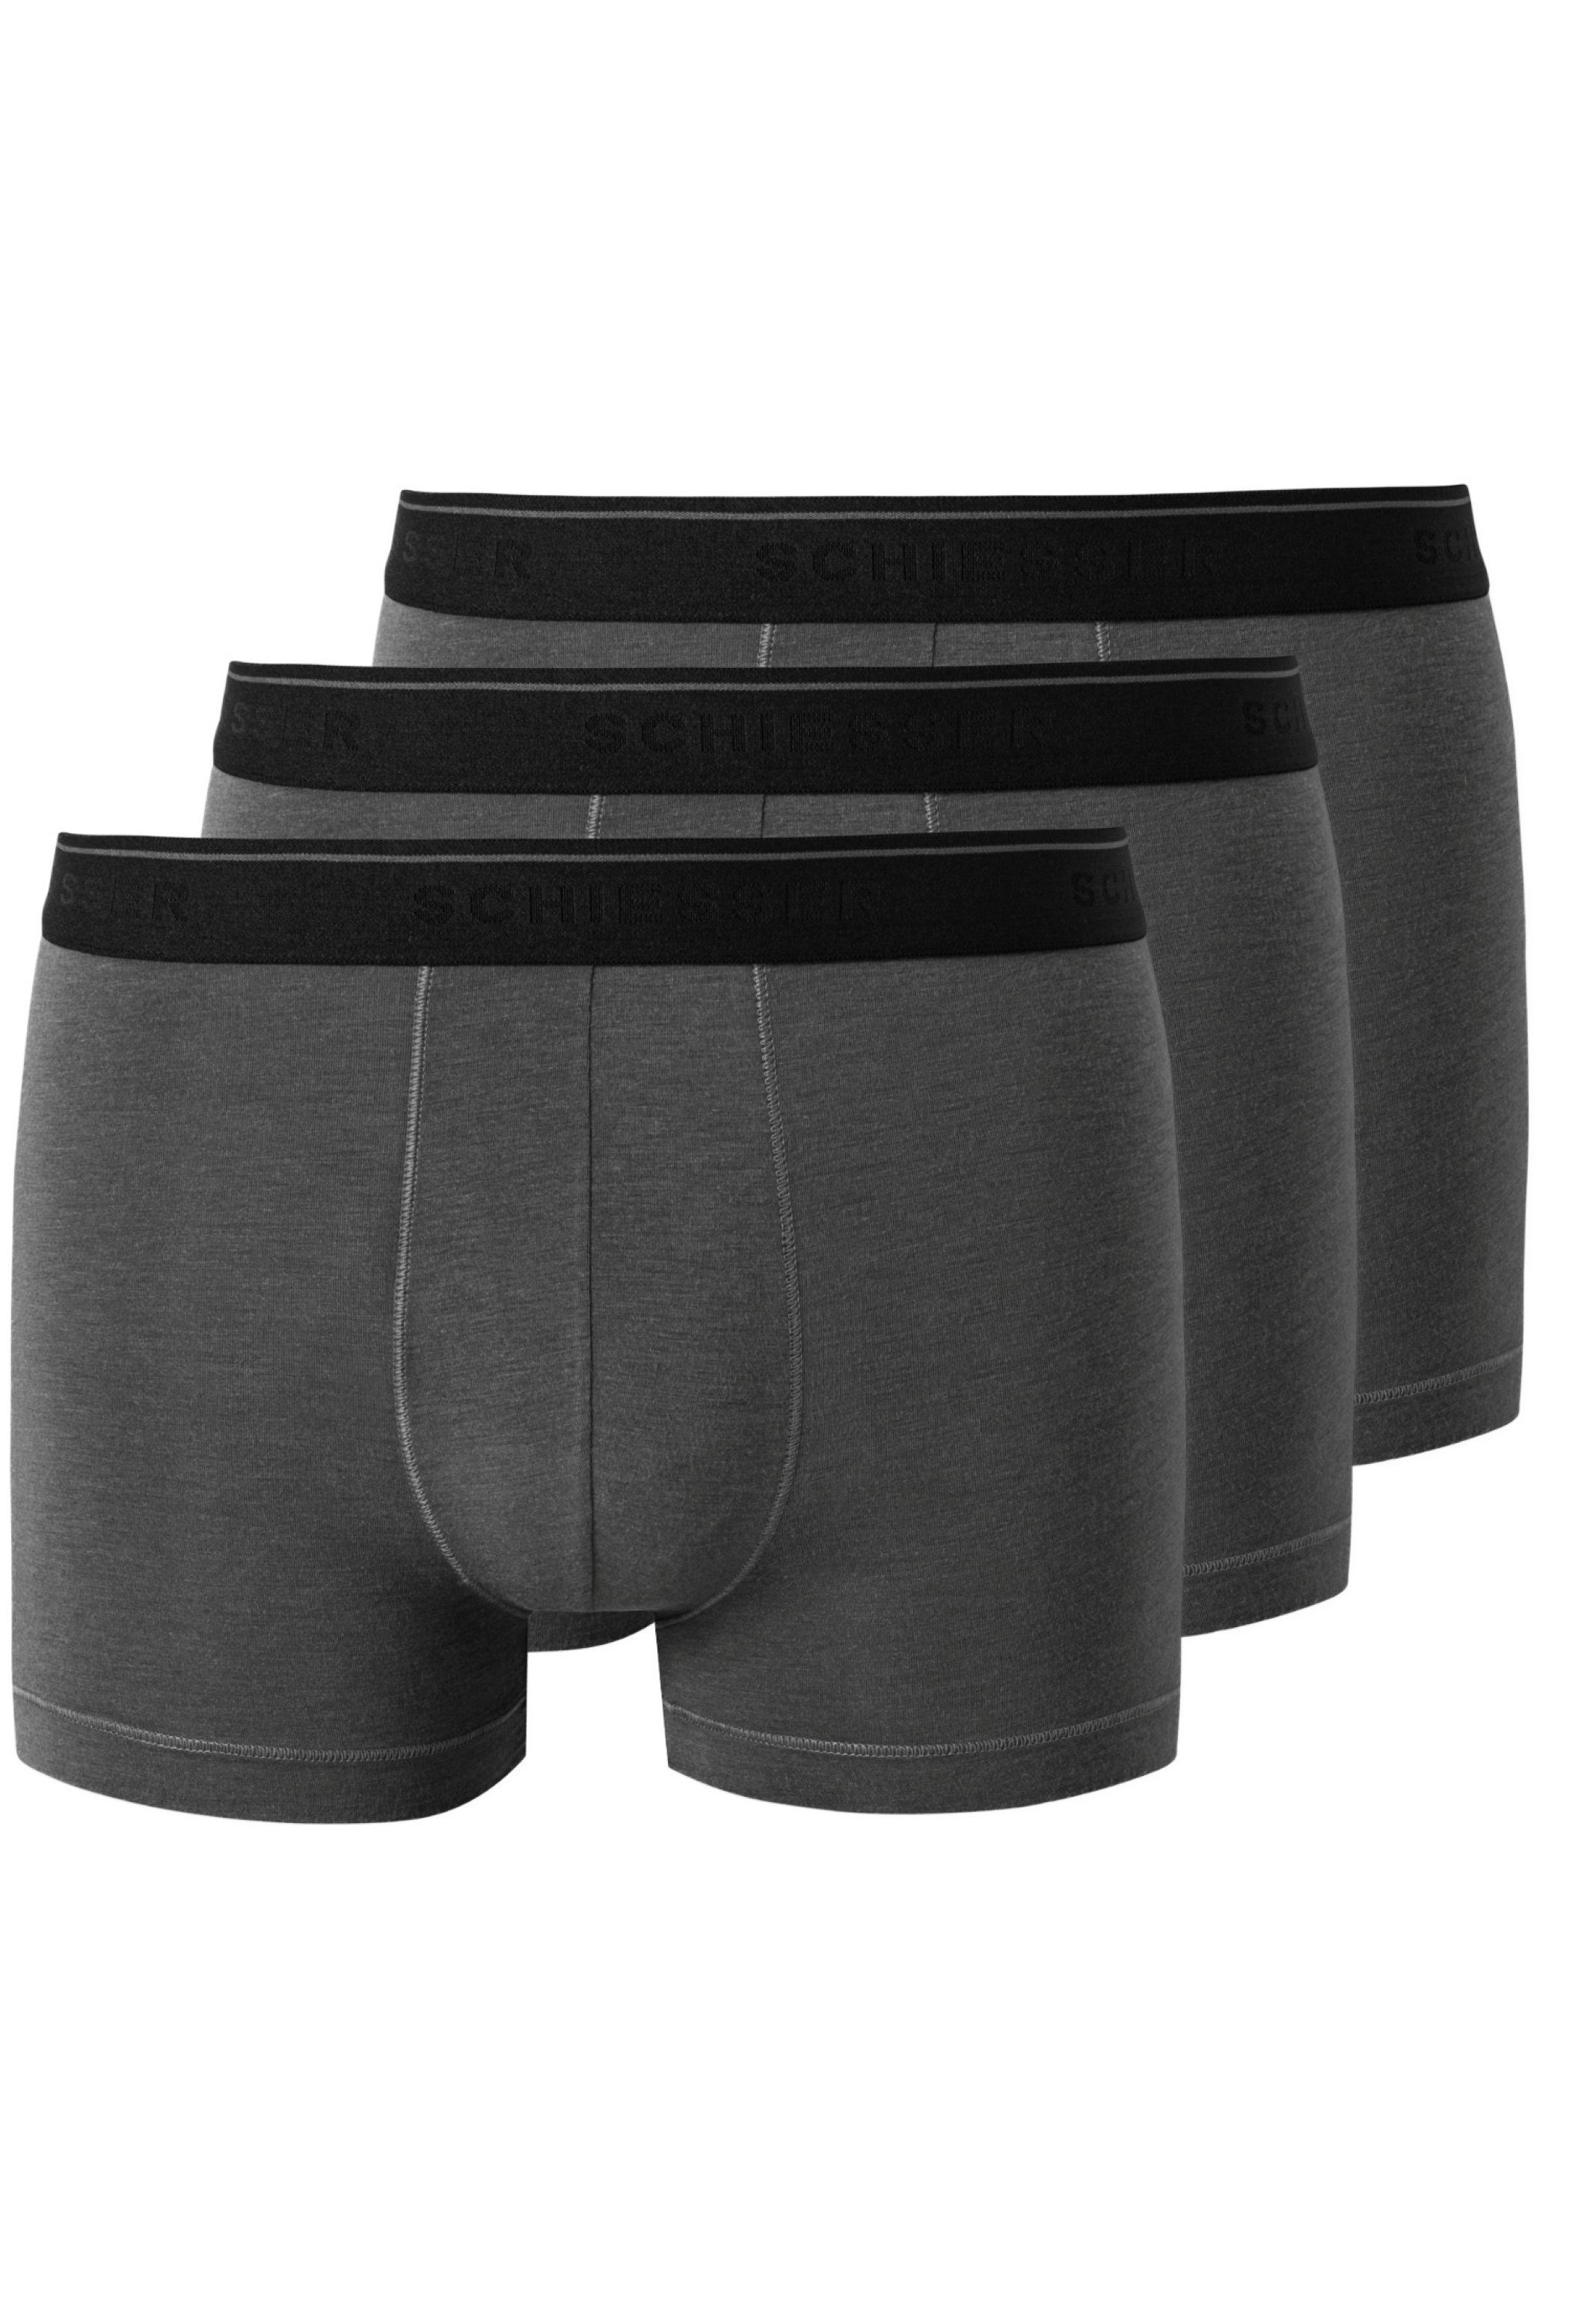 Wäsche/Bademode Boxershorts Schiesser Retro Boxer 3er Pack Personal Fit (3 Stück) Shorts - Ohne Eingriff - Körpernahe Shorts für